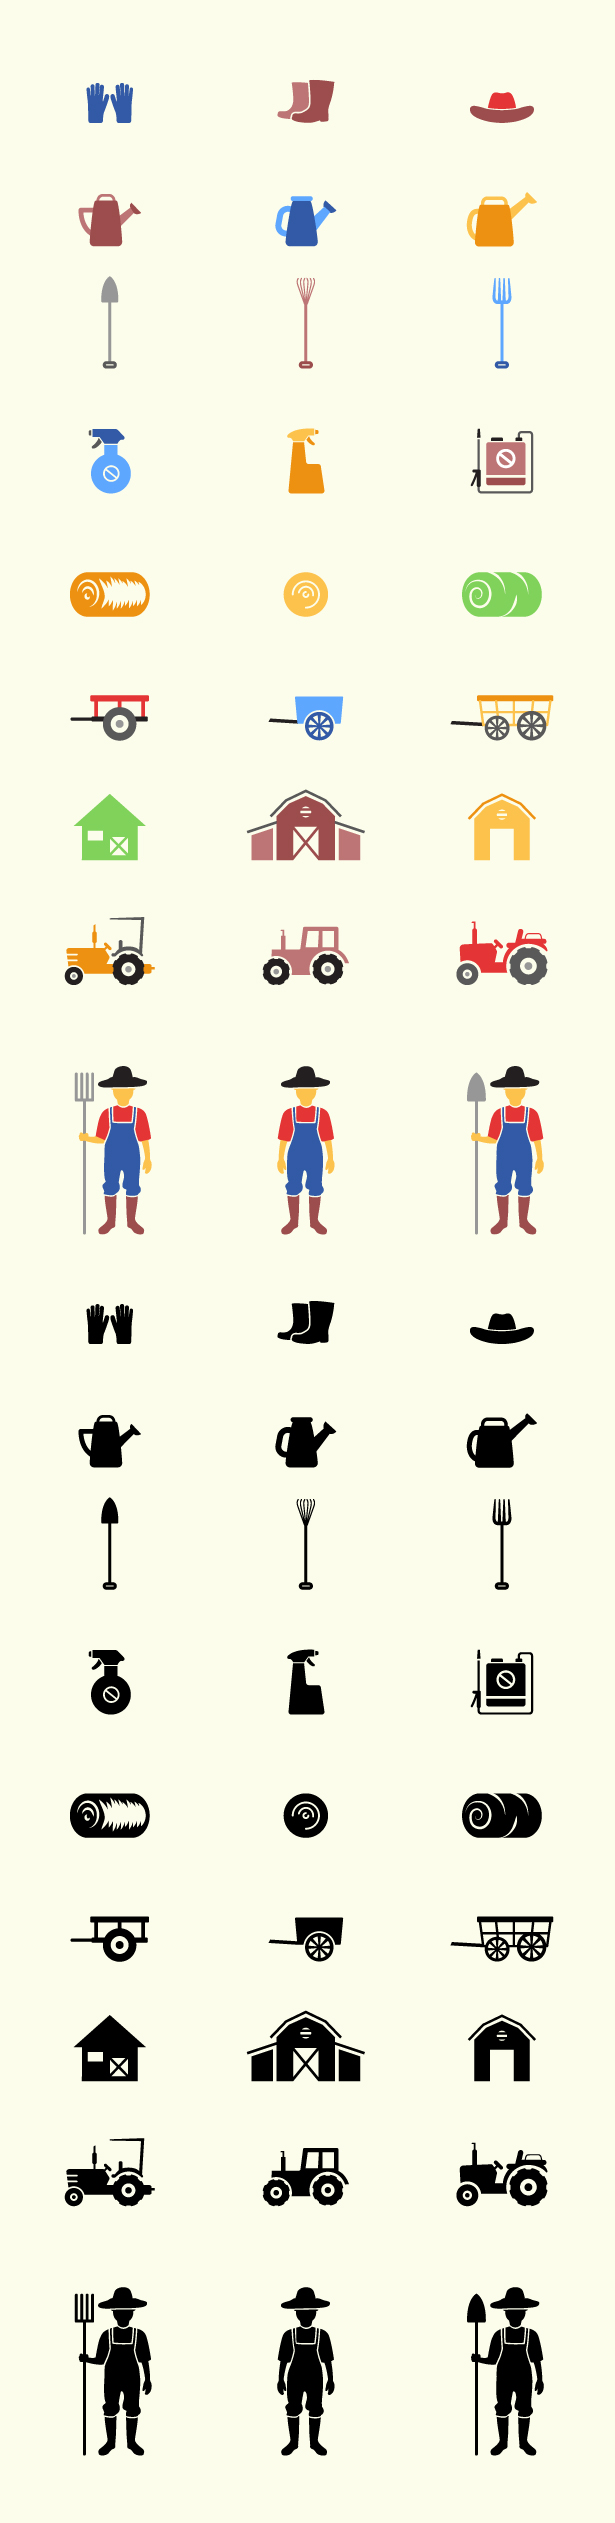 Farm Icons